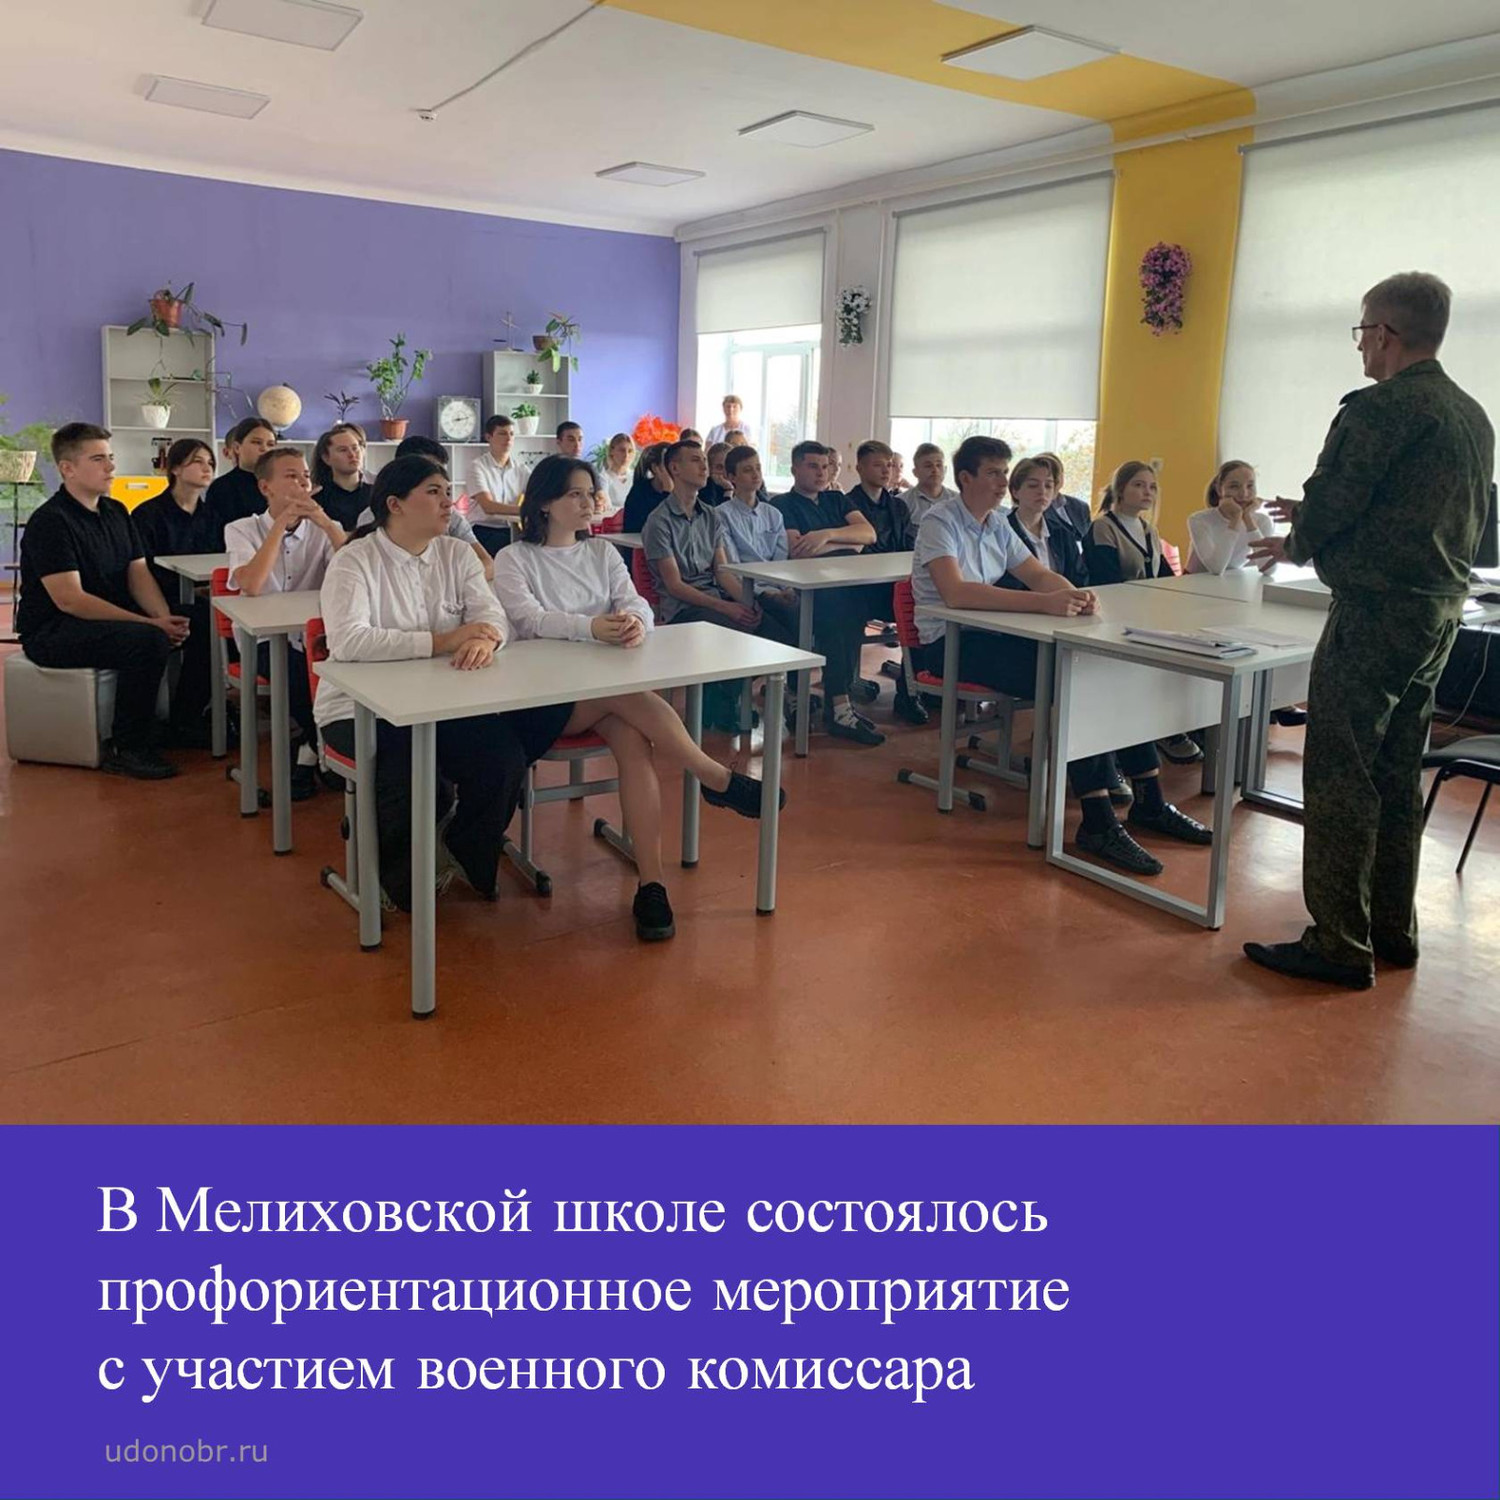 В Мелиховской школе состоялось профориентационное мероприятие с участием военного комиссара